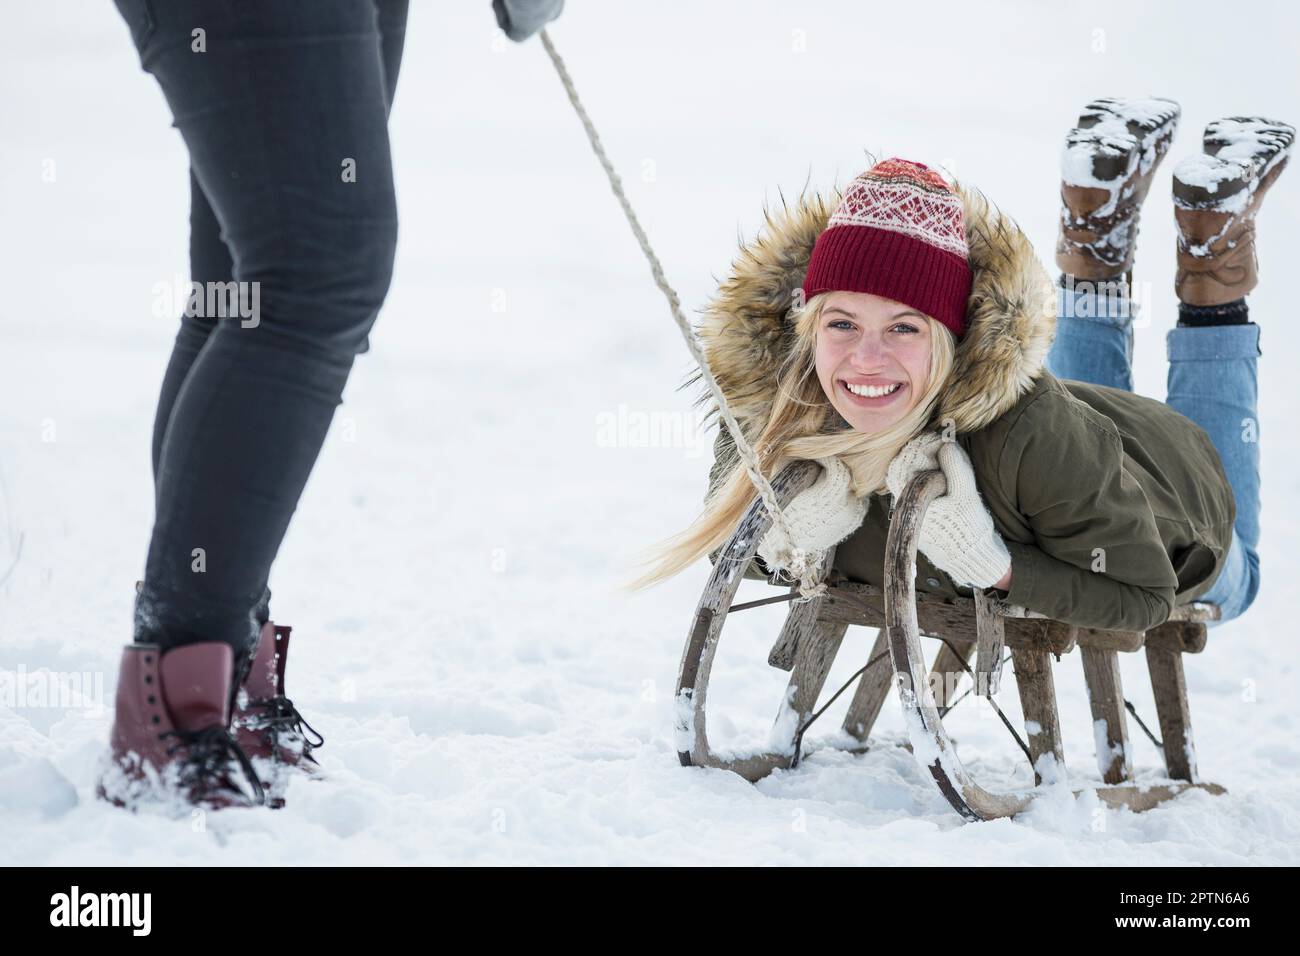 Zwei Mädchen im Teenageralter mit Rutsche in verschneiter Landschaft im Winter, Bayern, Deutschland Stockfoto